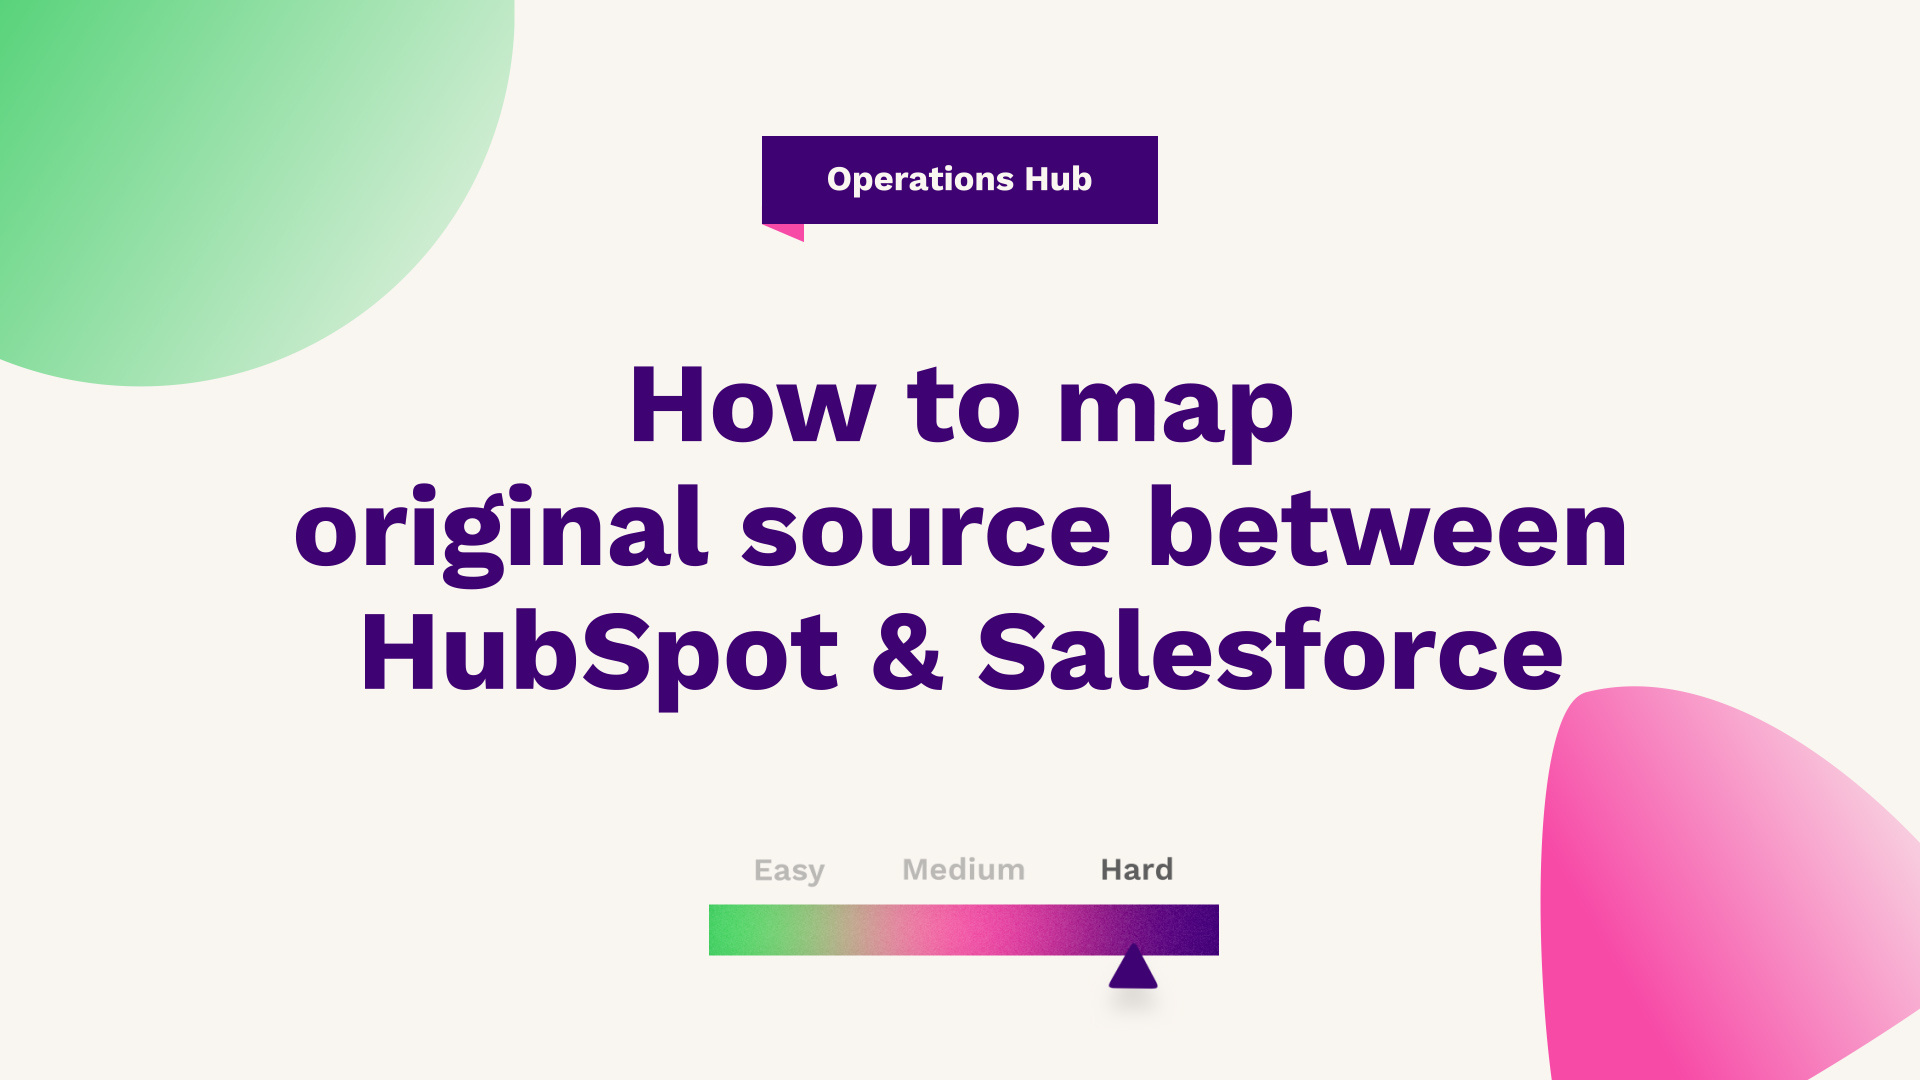 How to map original source between HubSpot & Salesforce